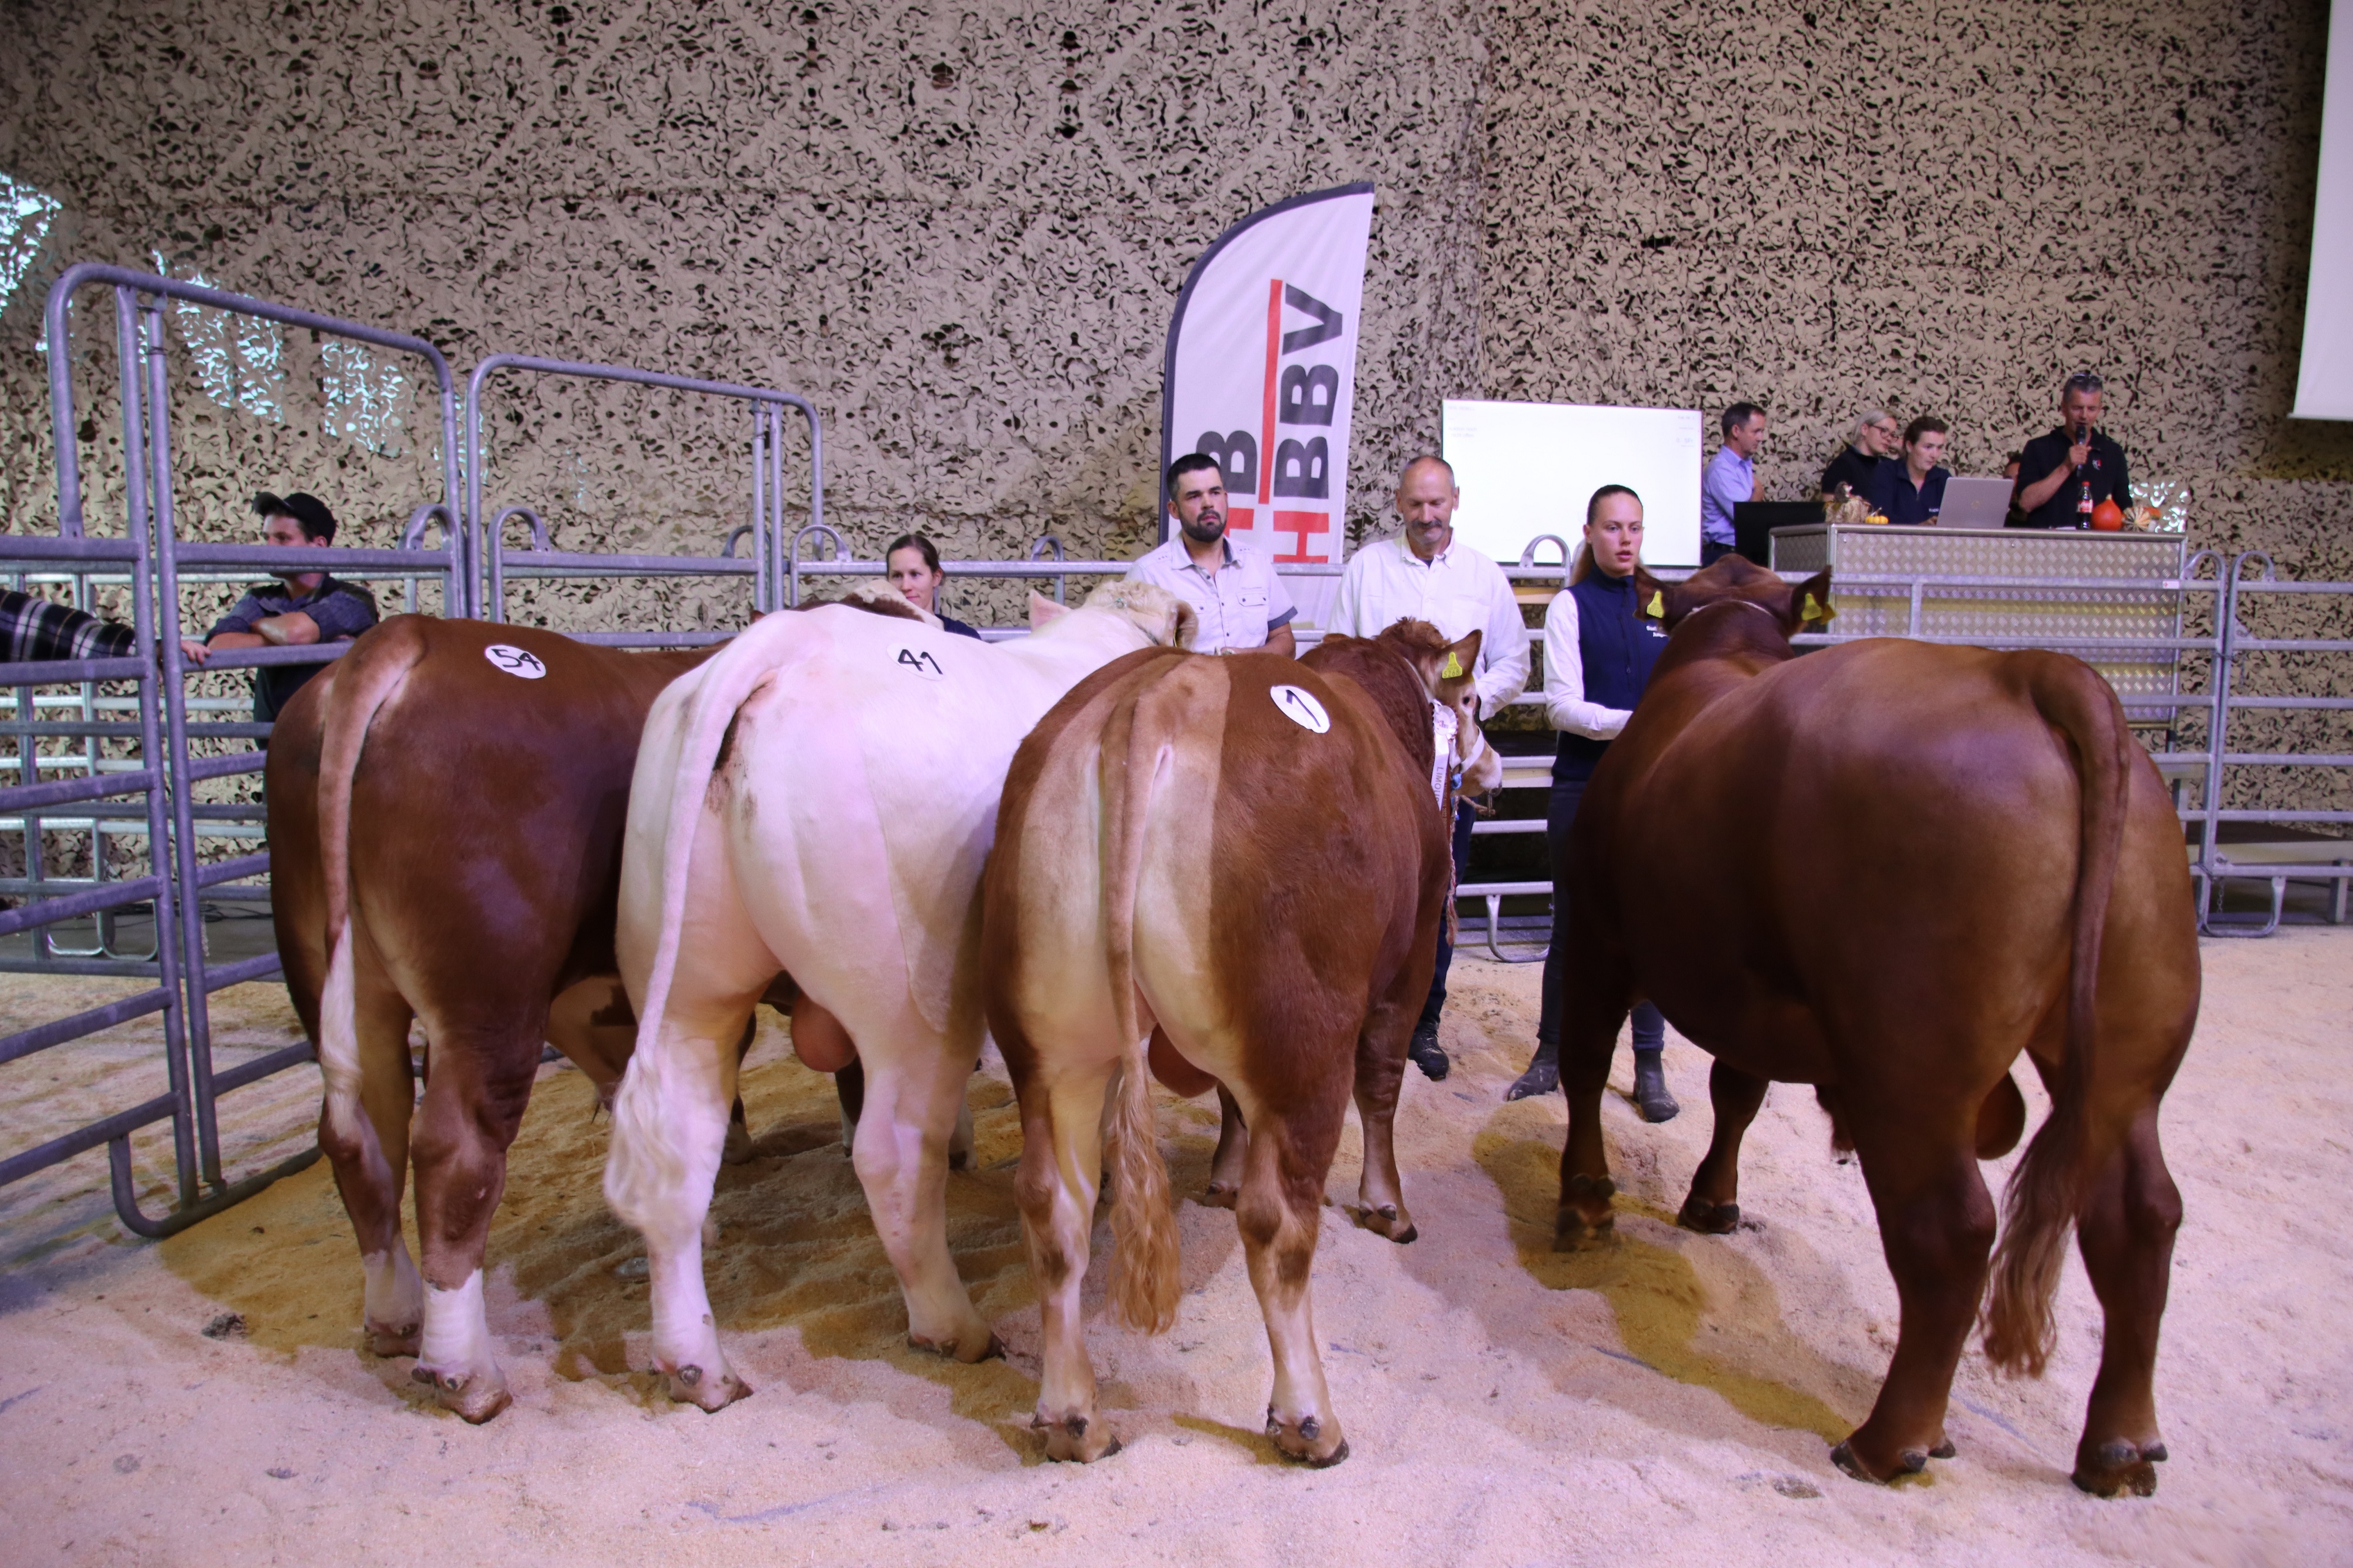 Un large choix de taureaux suisses attend les acheteurs au marché. Champion 21.09.22. Source :  Vache mère Suisse